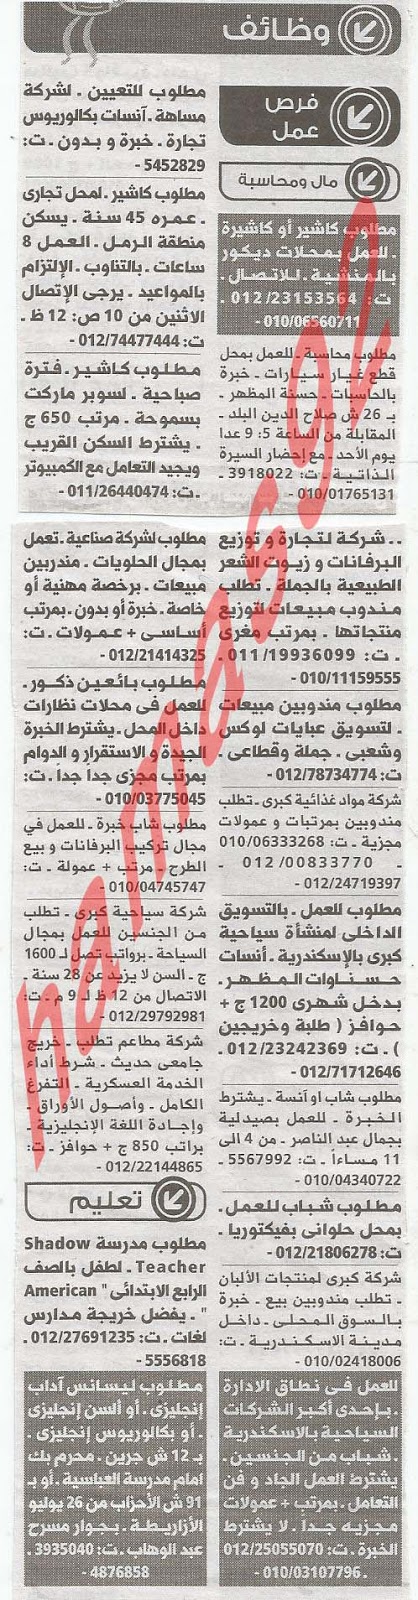 وظائف شاغرة من جريدة الوسيط الاسكندرية - مصر الاثنين 18/2/2013 %D9%88+%D8%B3+%D8%B3+4